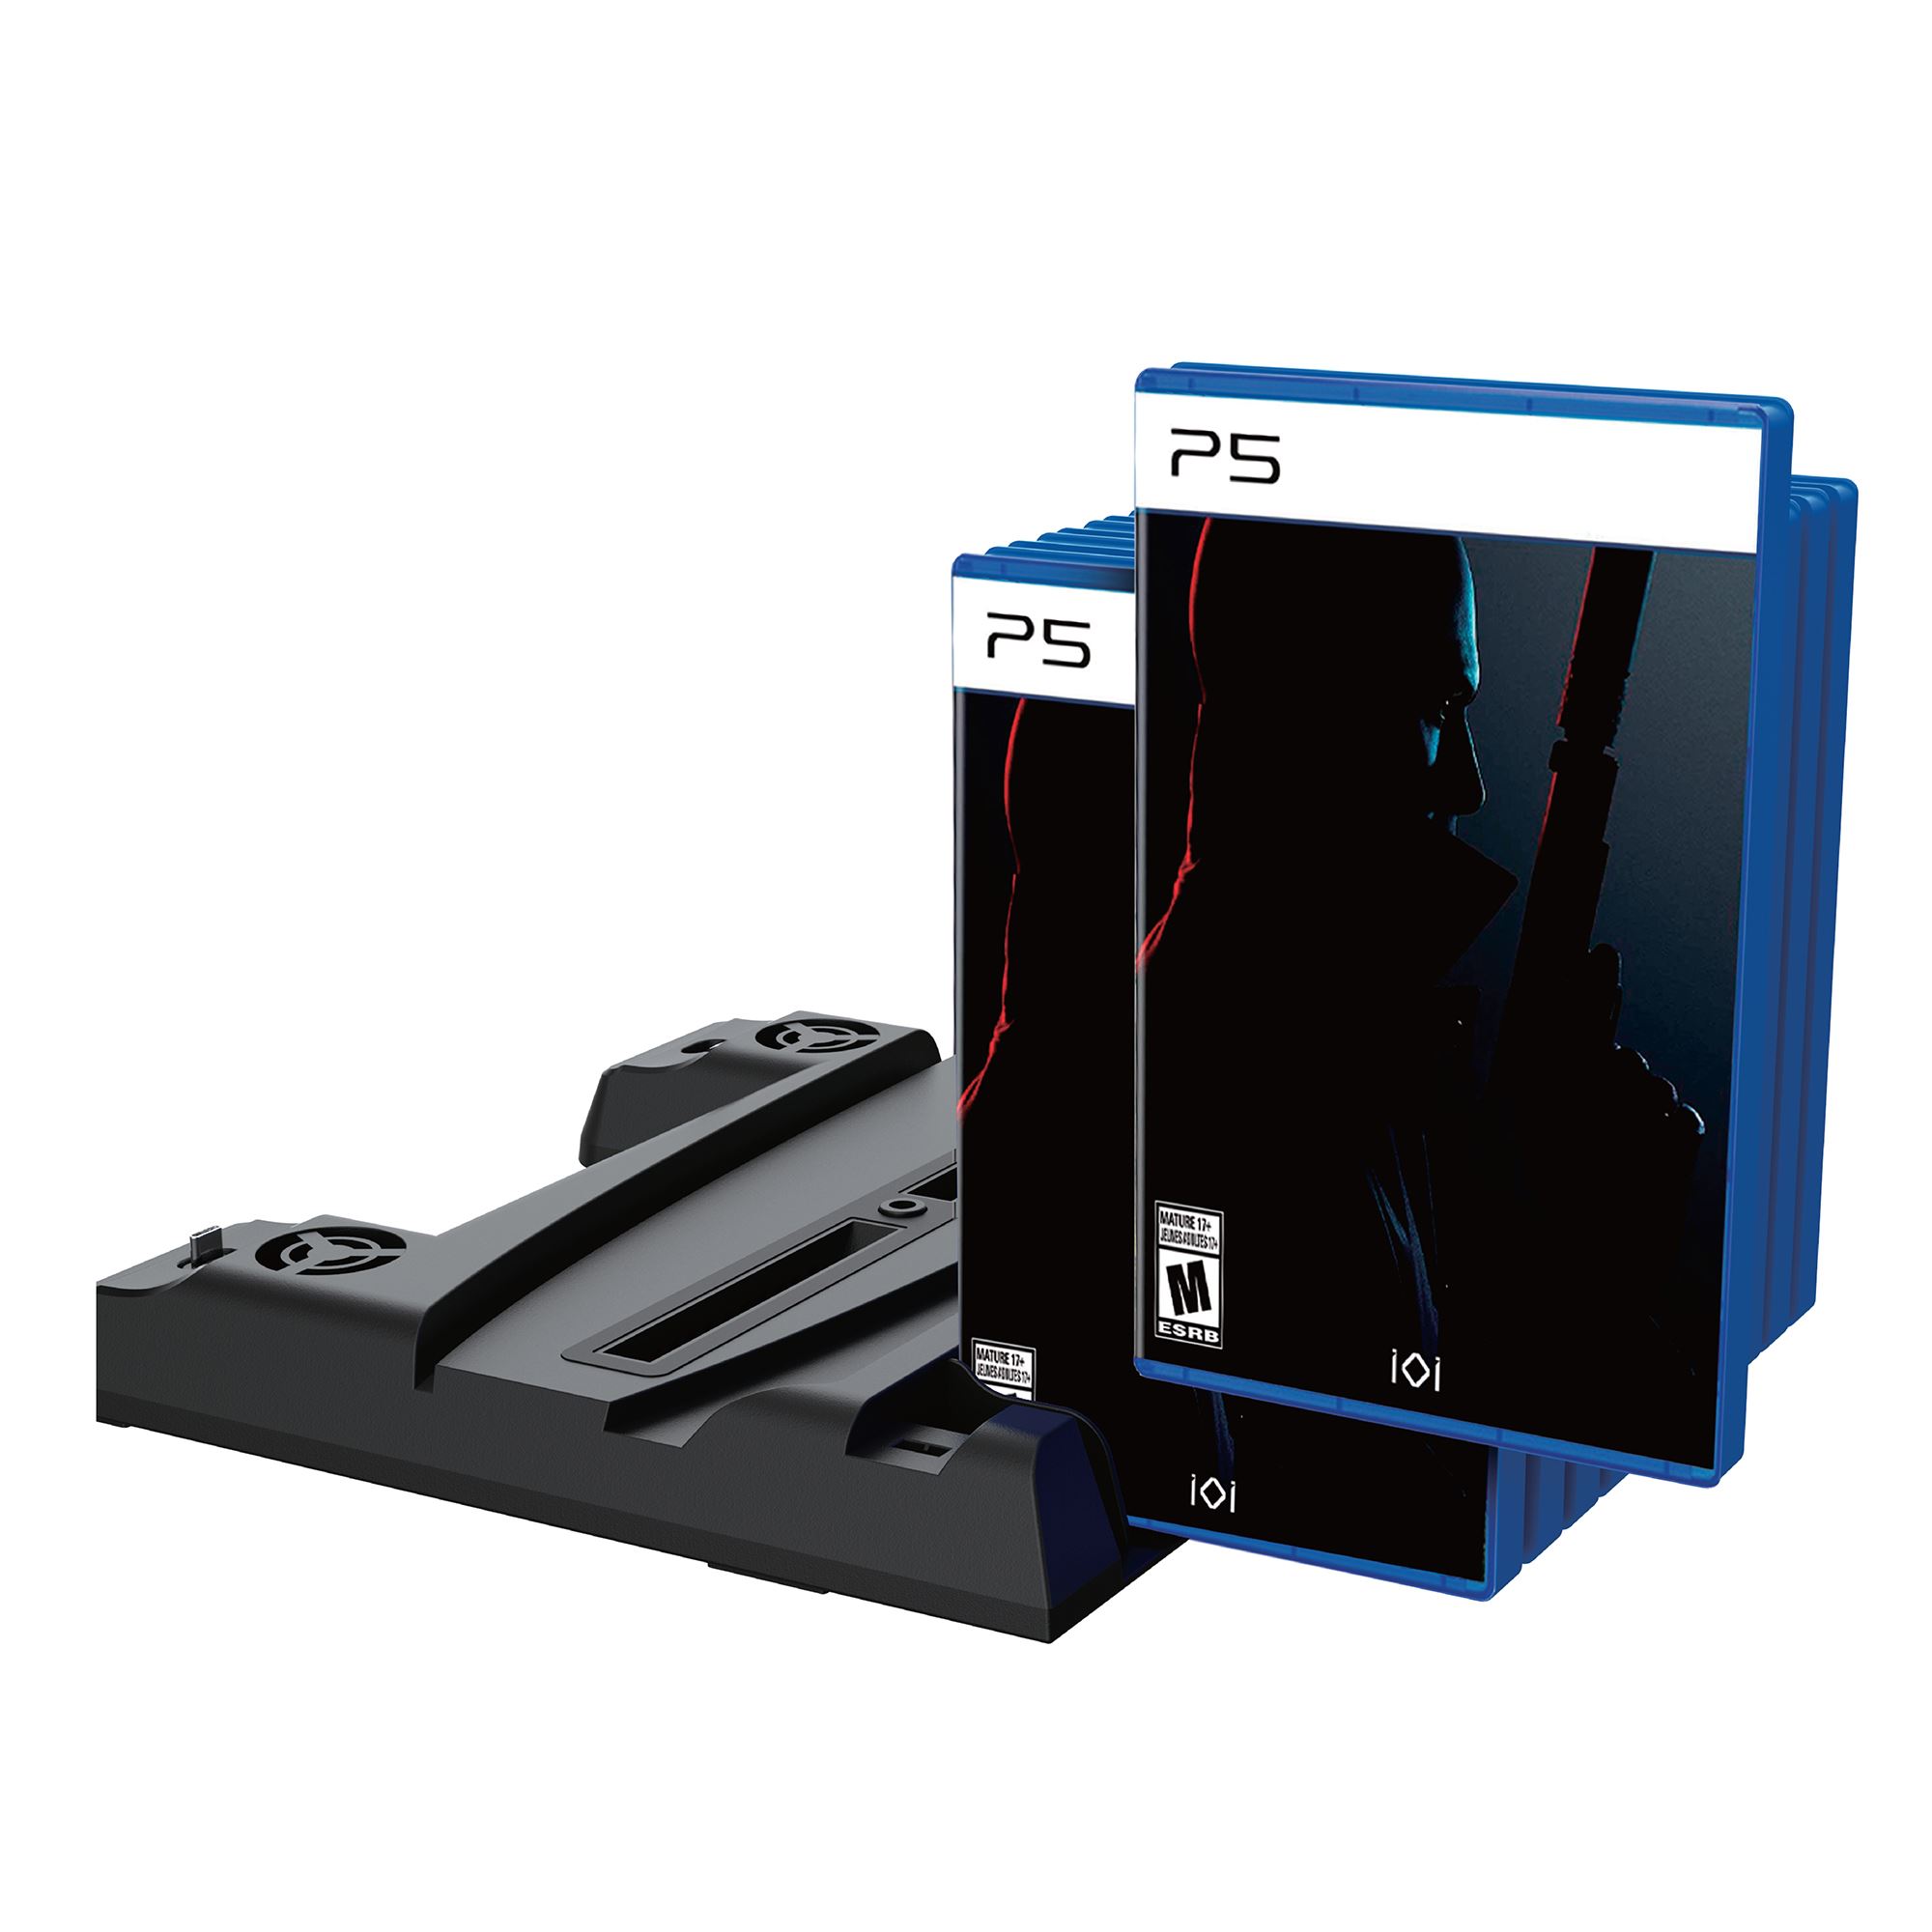 Soporte Ps5 con ventilador de refrigeración y estación de carga dual Ps5  con soporte para auriculares en tamaño mini para consola Playstation 5 Ps5, ventilador  Ps5 que ahorra espacio con Ps